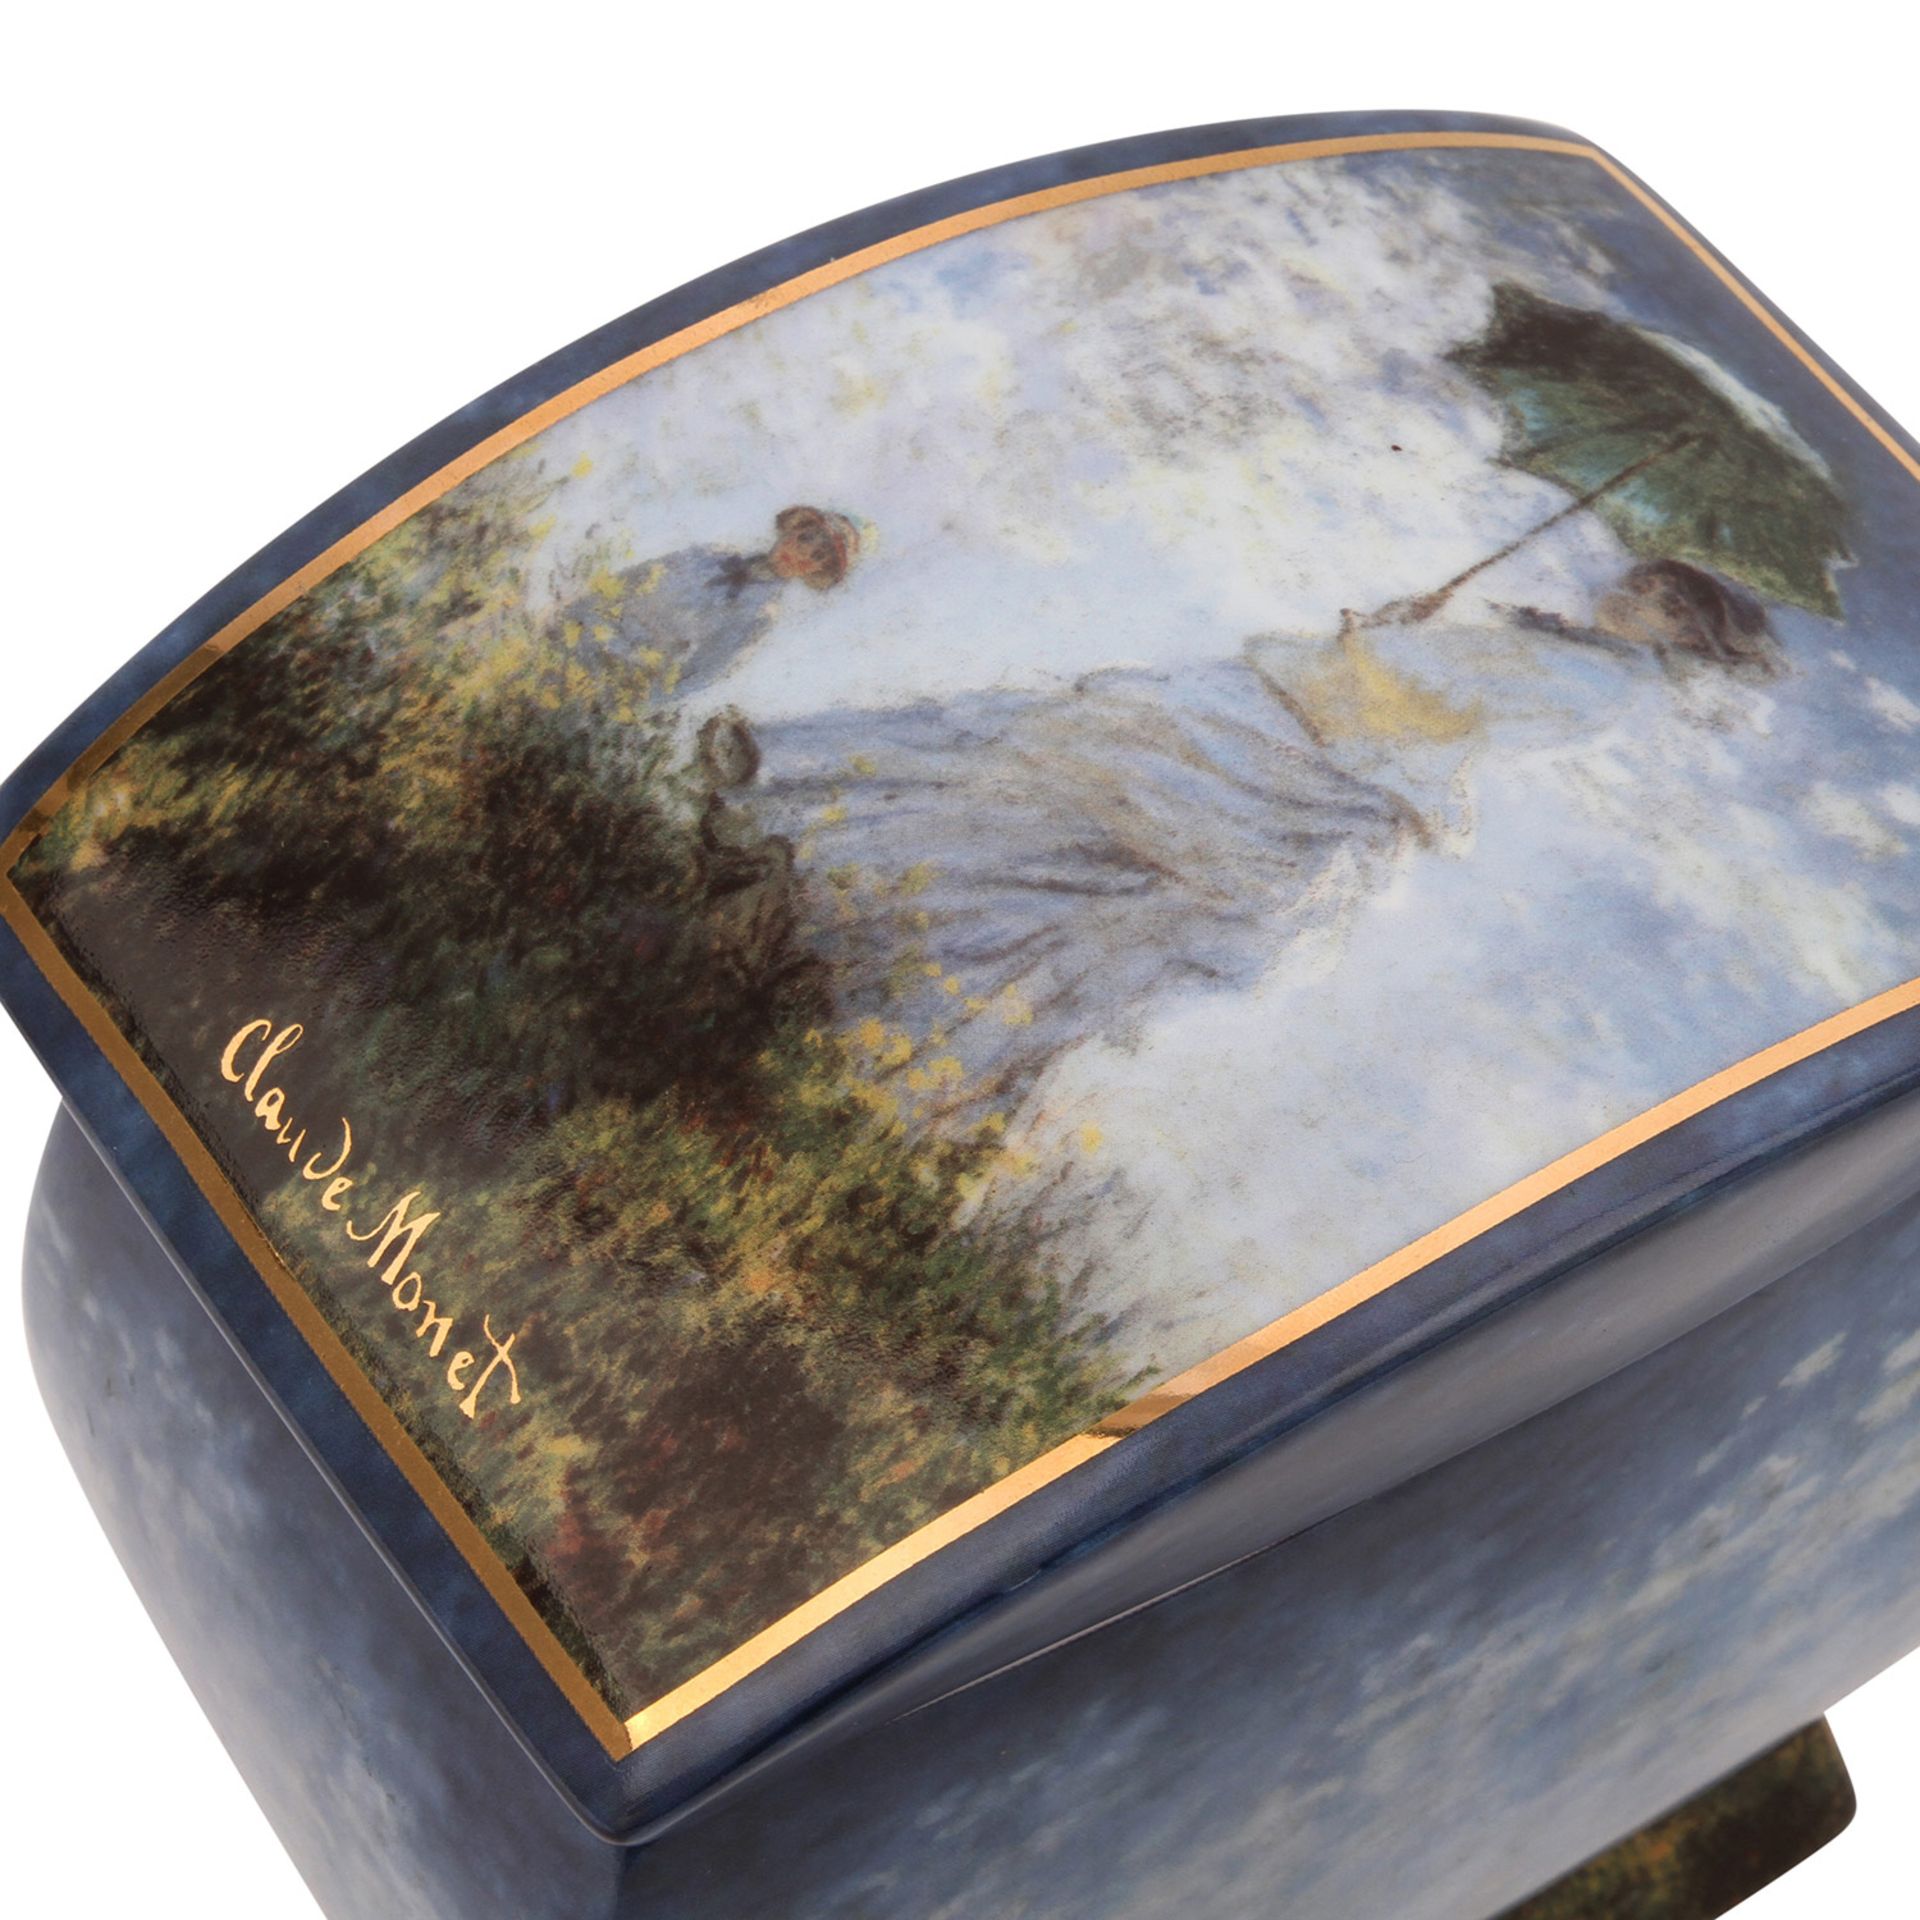 GOEBEL ARTIS ORBIS Deckeldose "Claude Monet", 20. Jh.Rechteckige Form mit flachem Deckel, - Image 6 of 7